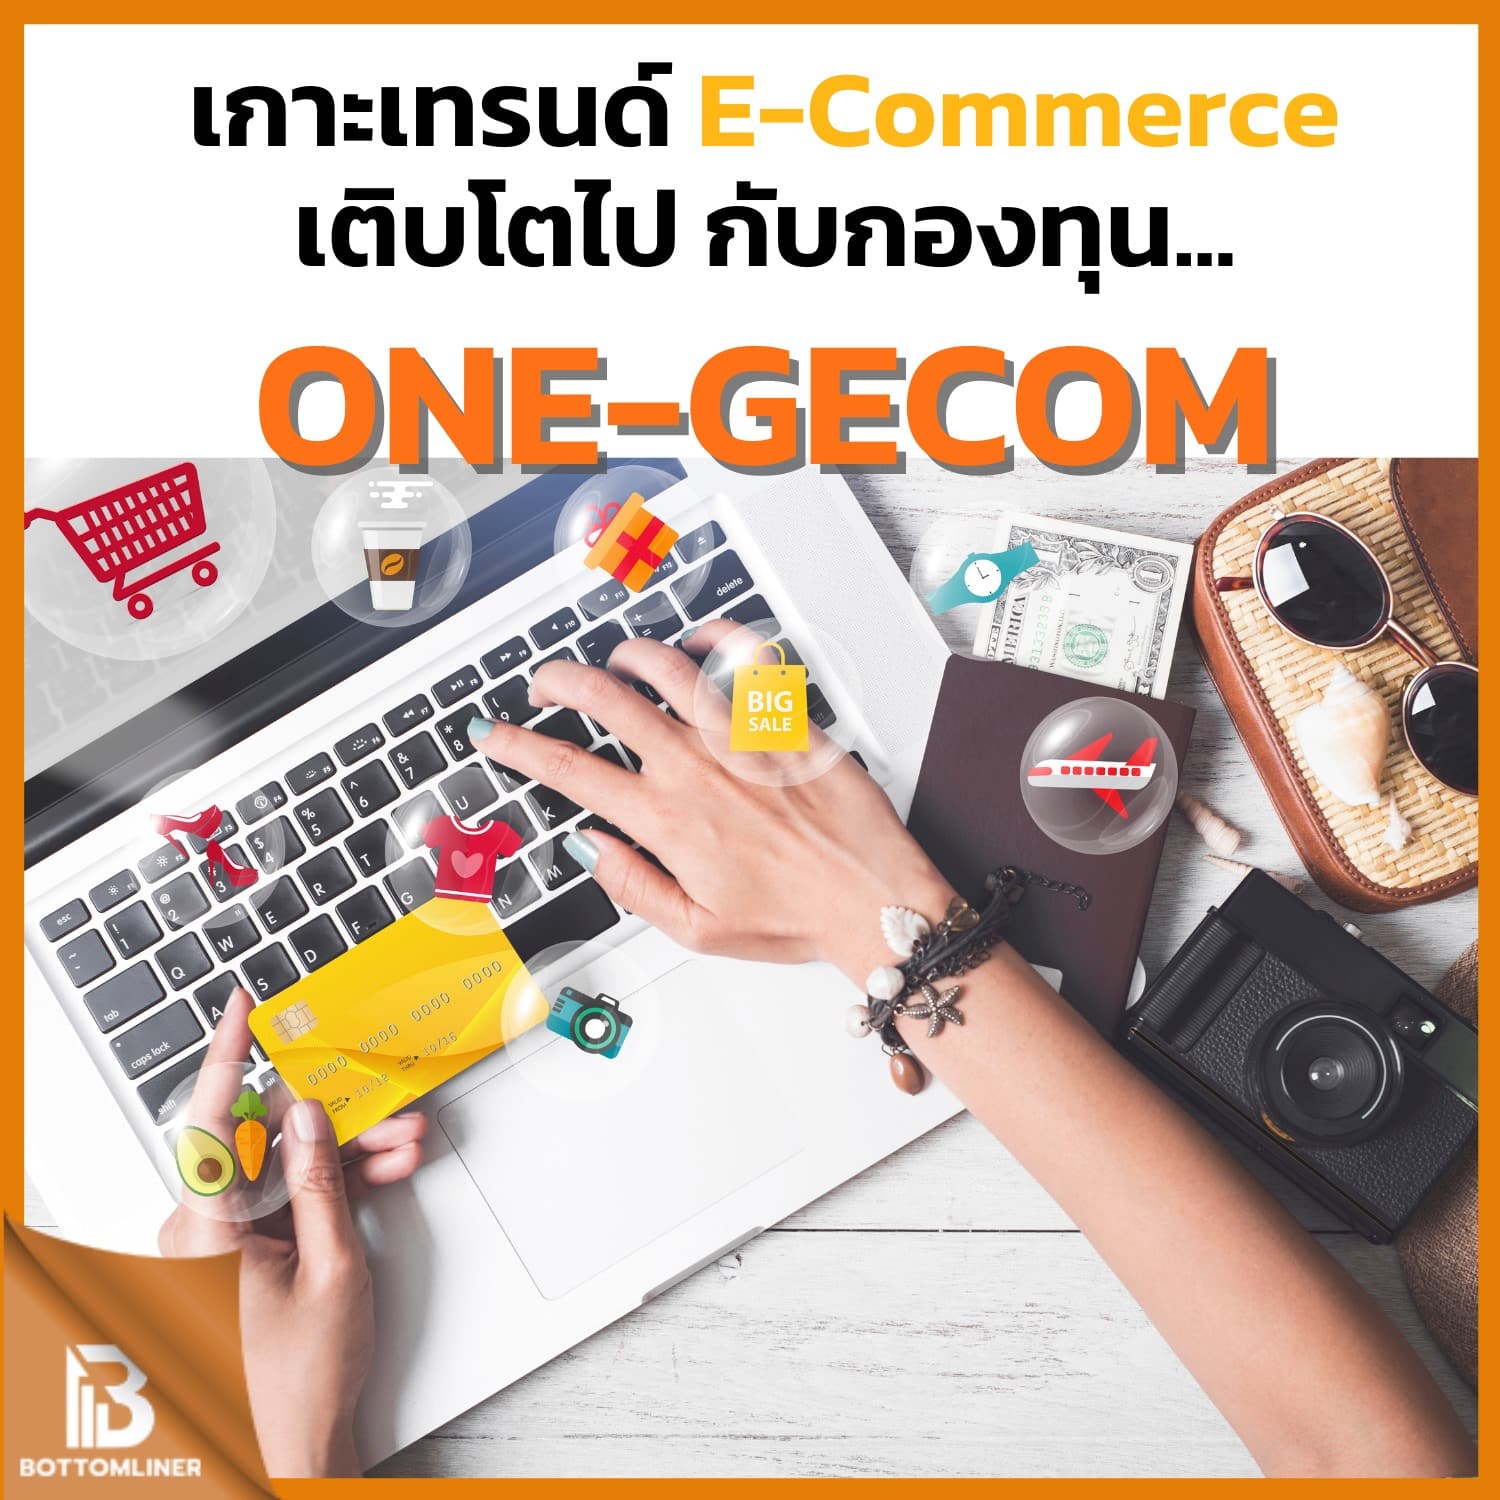 เกาะกระแส E-Commerce ทั่วโลก เติบโตไปกับกองทุน ONE-GECOM